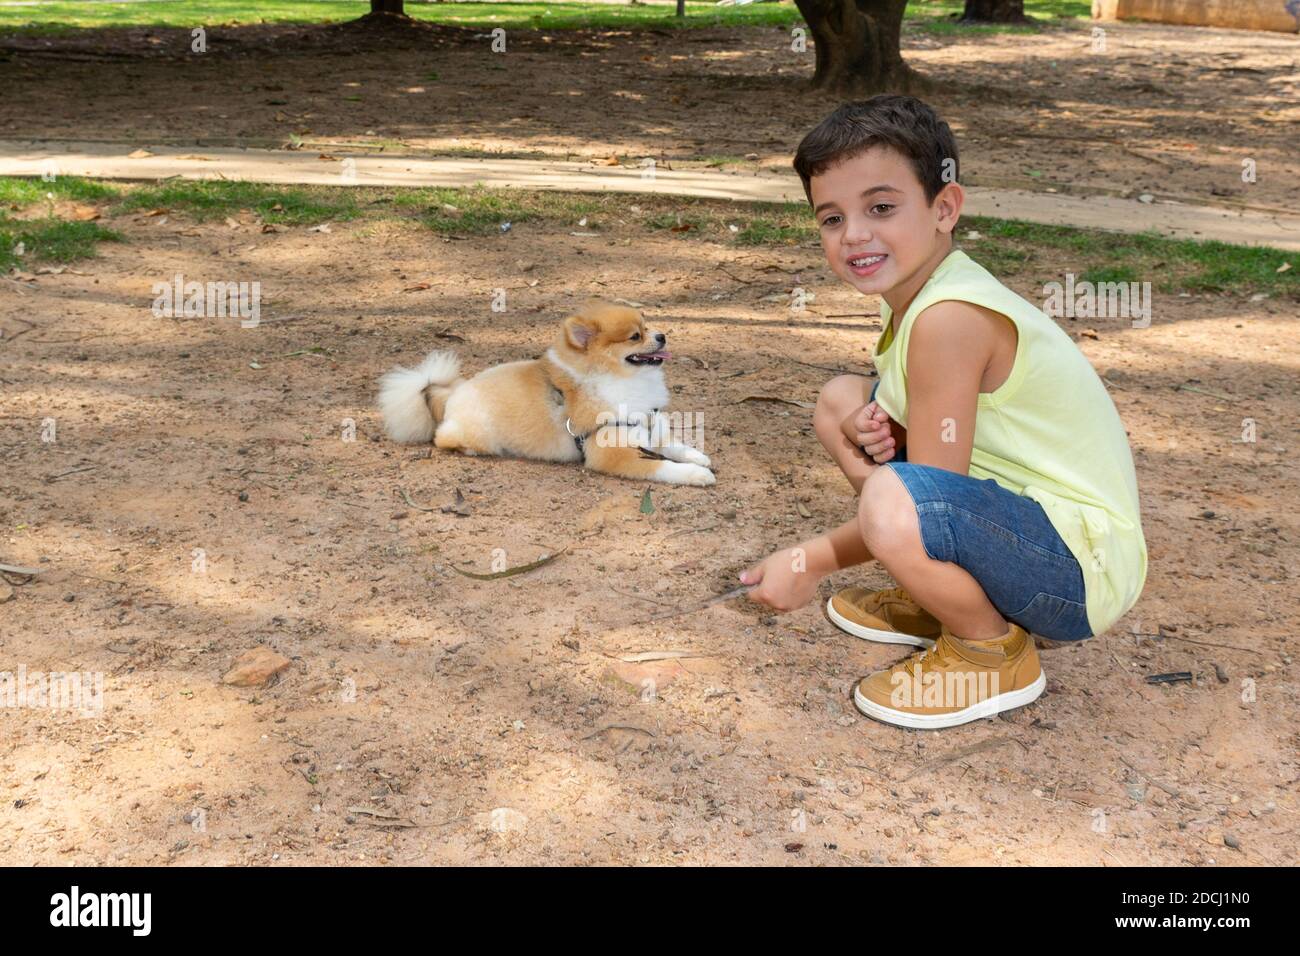 Niño de 6 años en una tarde en la plaza Honório Sabino jugando en bicicleta, con perros y comiendo palomitas. Foto de stock